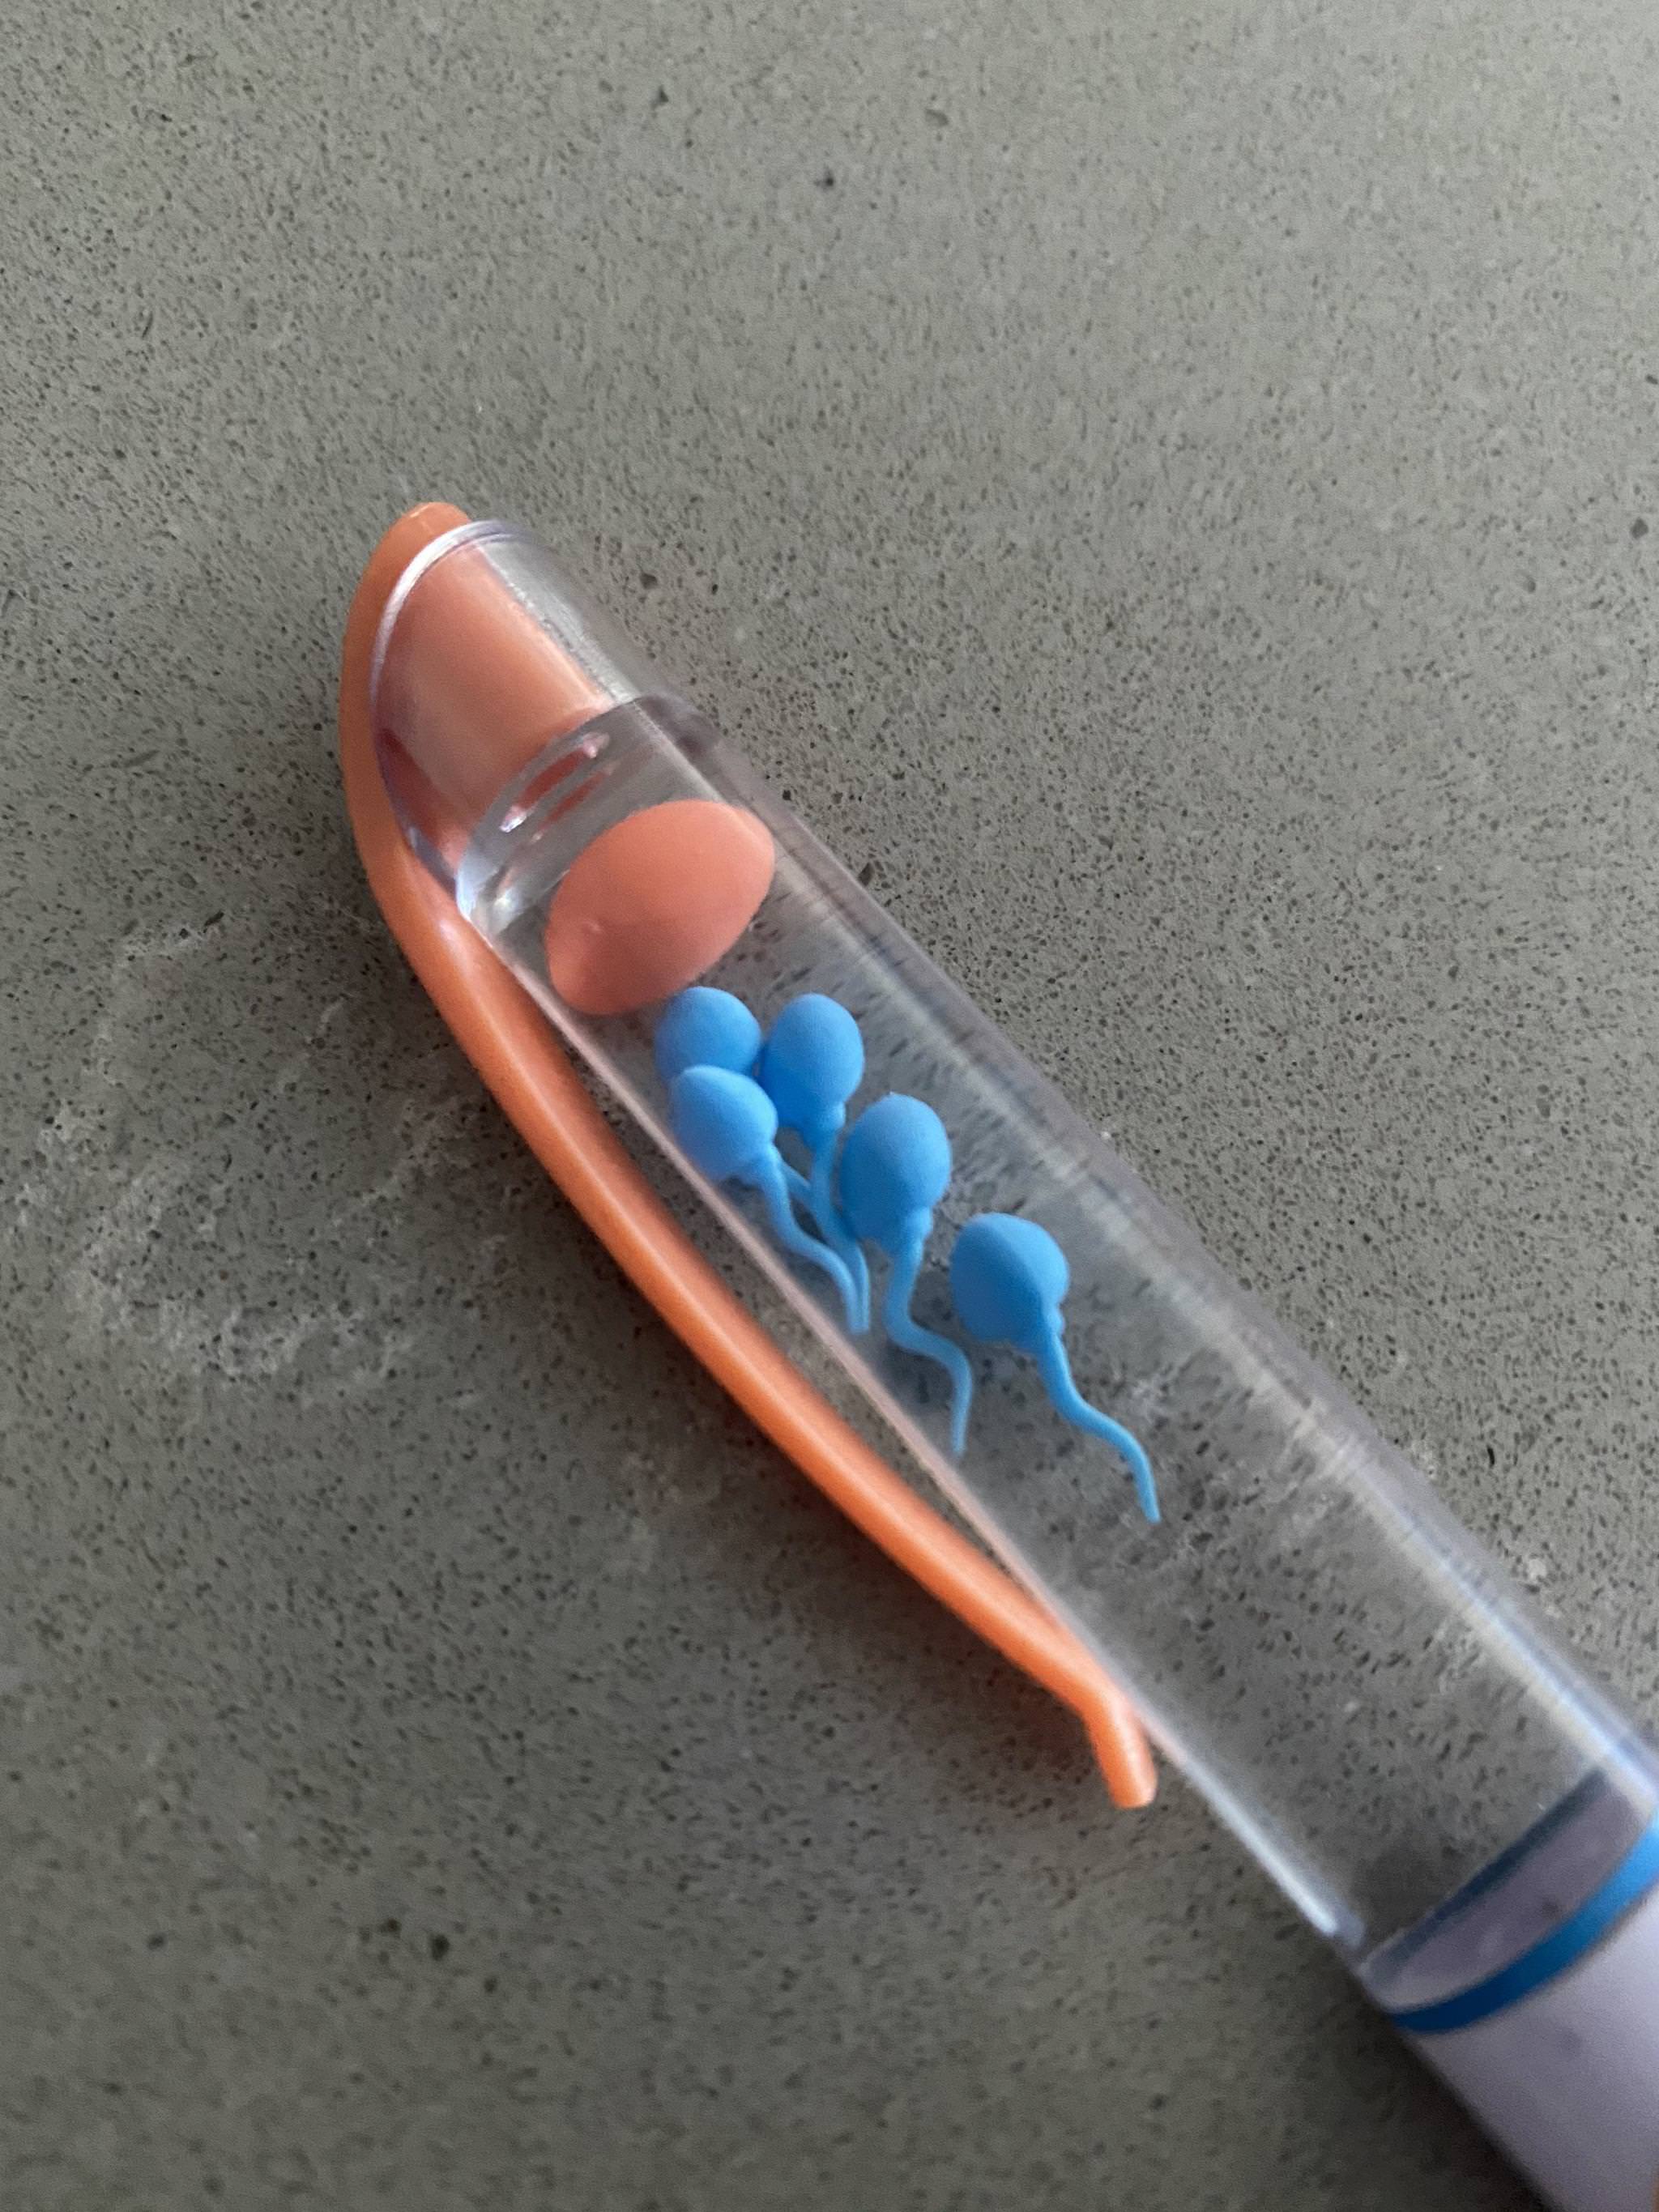 Аква ручка. Врач с ручкой. Аква ручки со сперматозоидами. В Японии ручки с глистом. Канцелярия юмор.